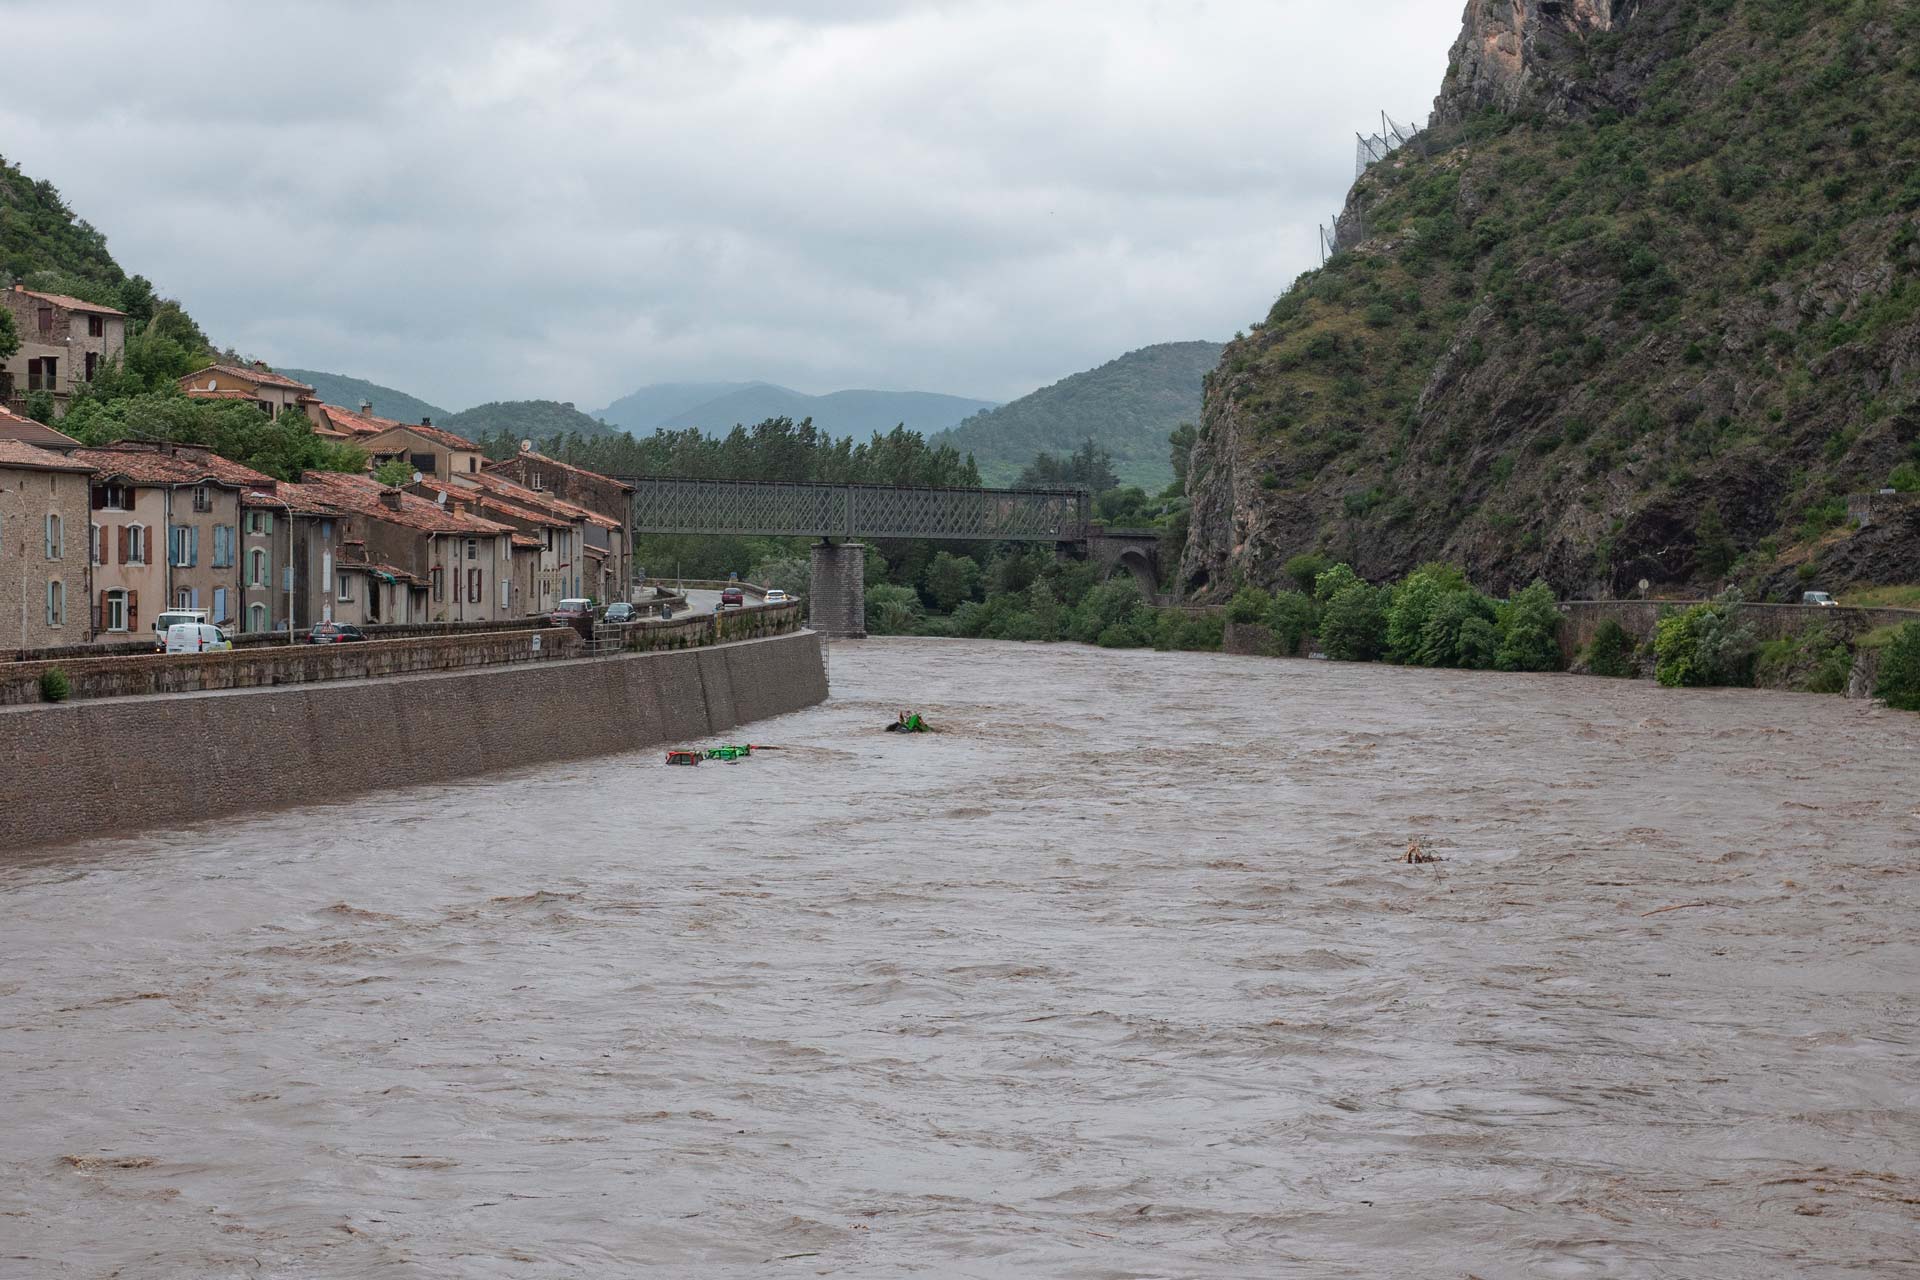 Le 12 juin, une crue soudaine du Gardon d’Anduze a rappelé la brutalité des phénomènes météorologiques dans le bassin cévenol.